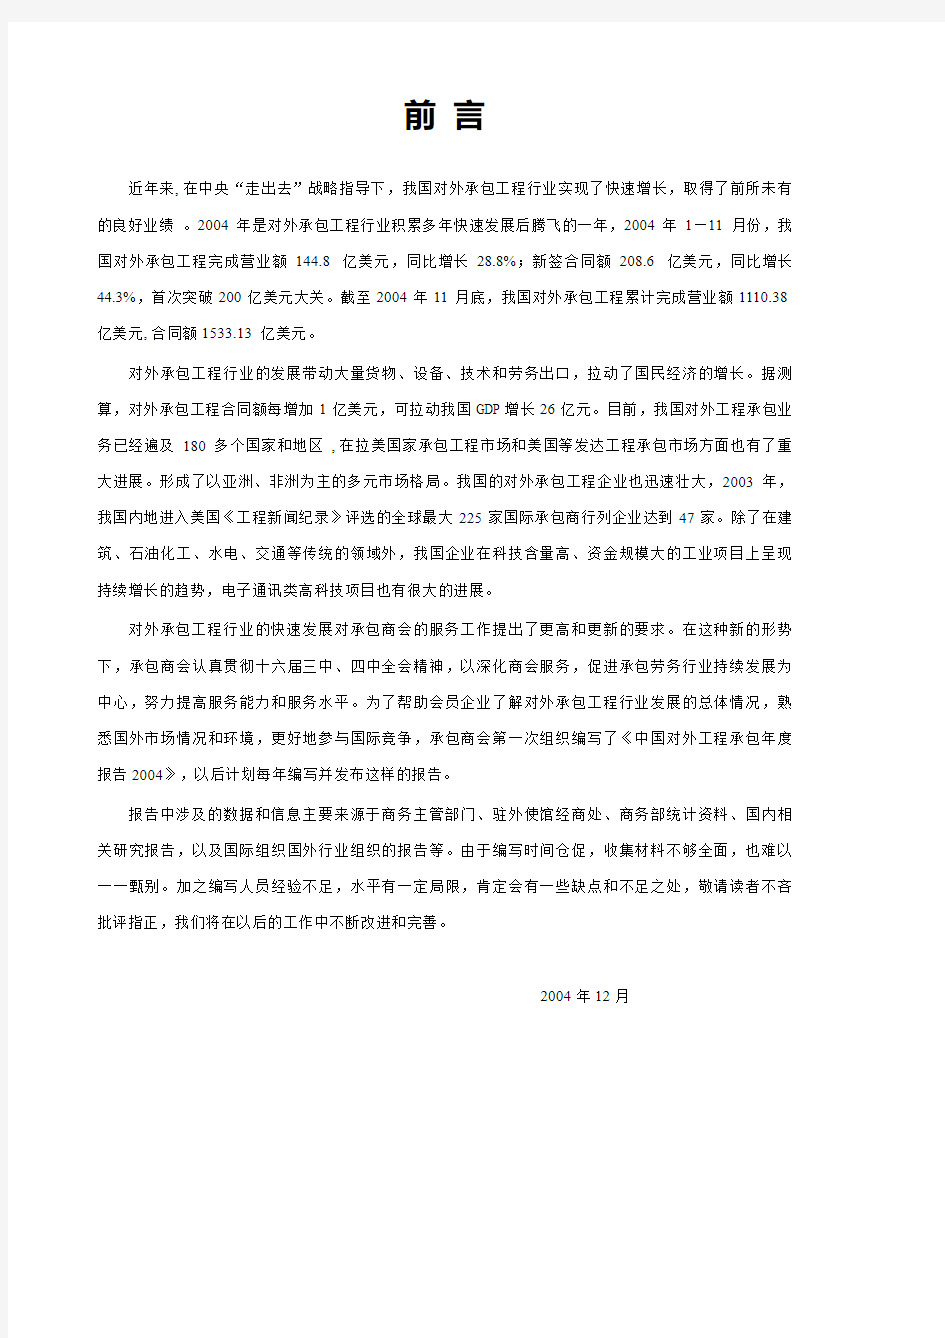 中国对外工程承包 报告 